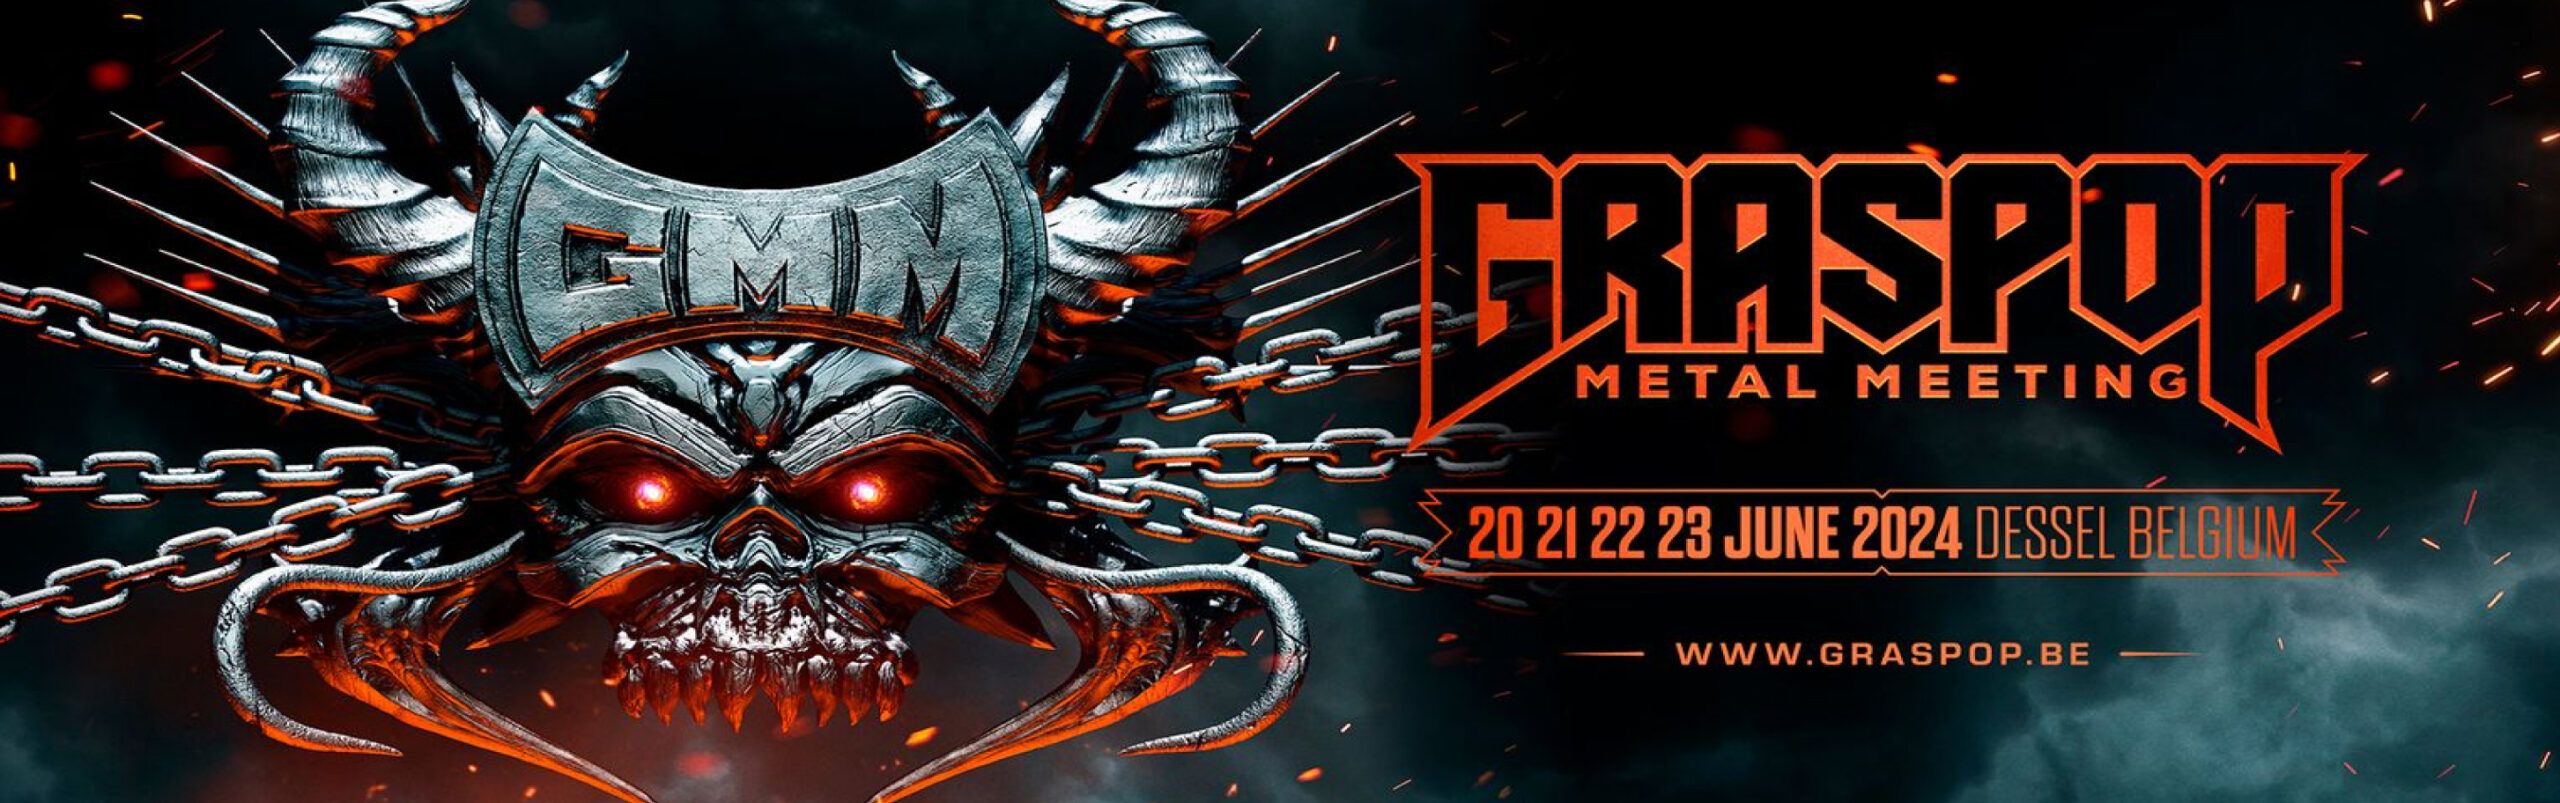 Graspop Metal Meeting header